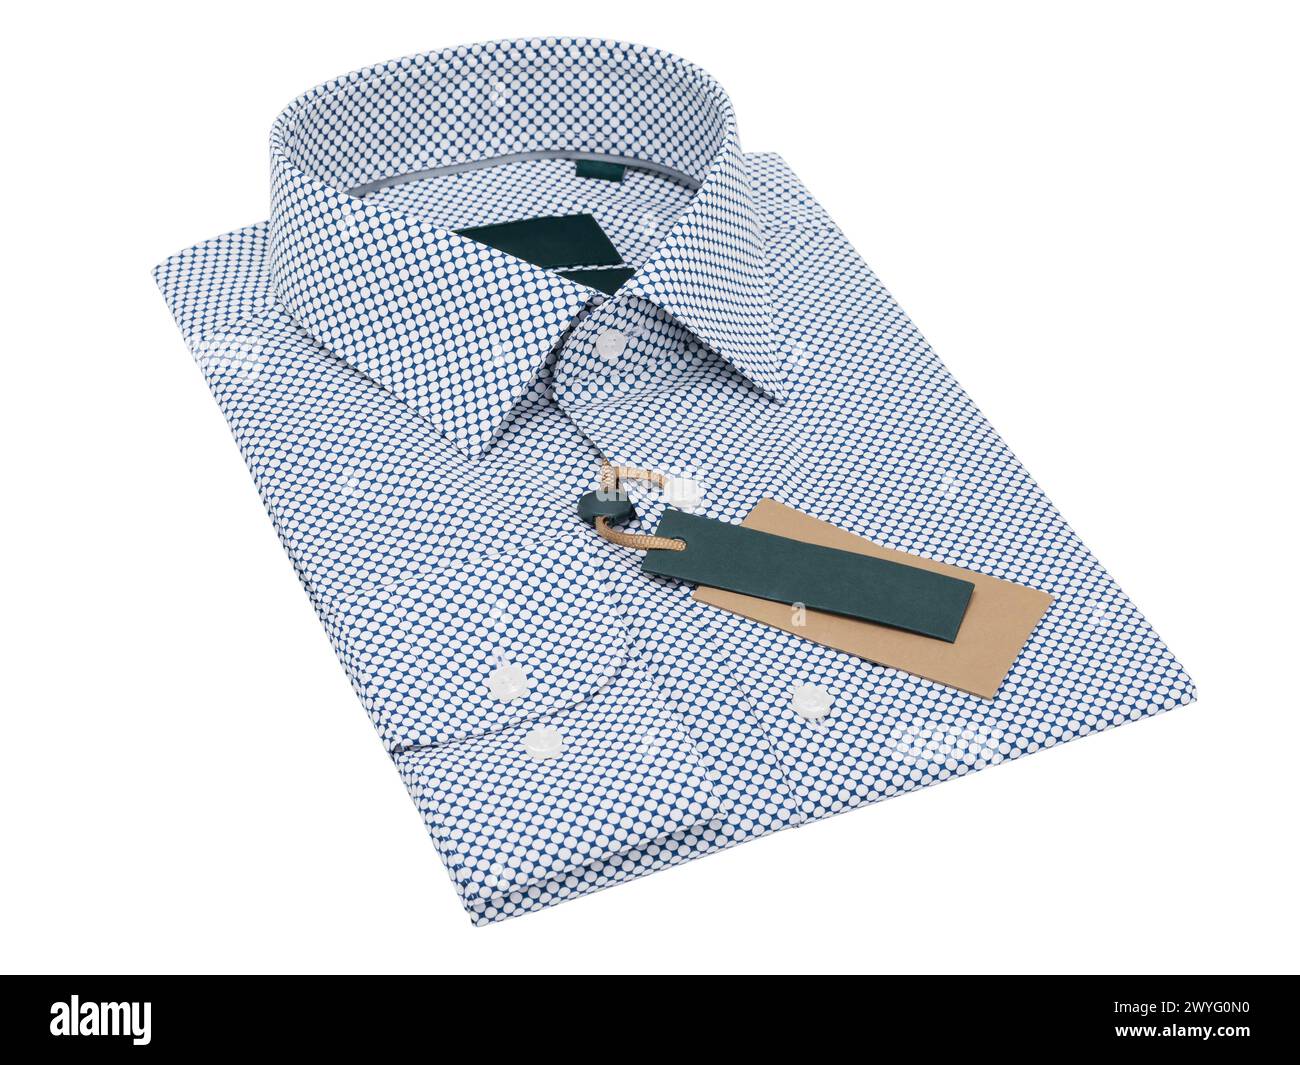 Folded blue white polka dot long sleeve shirt isolated on white background Stock Photo